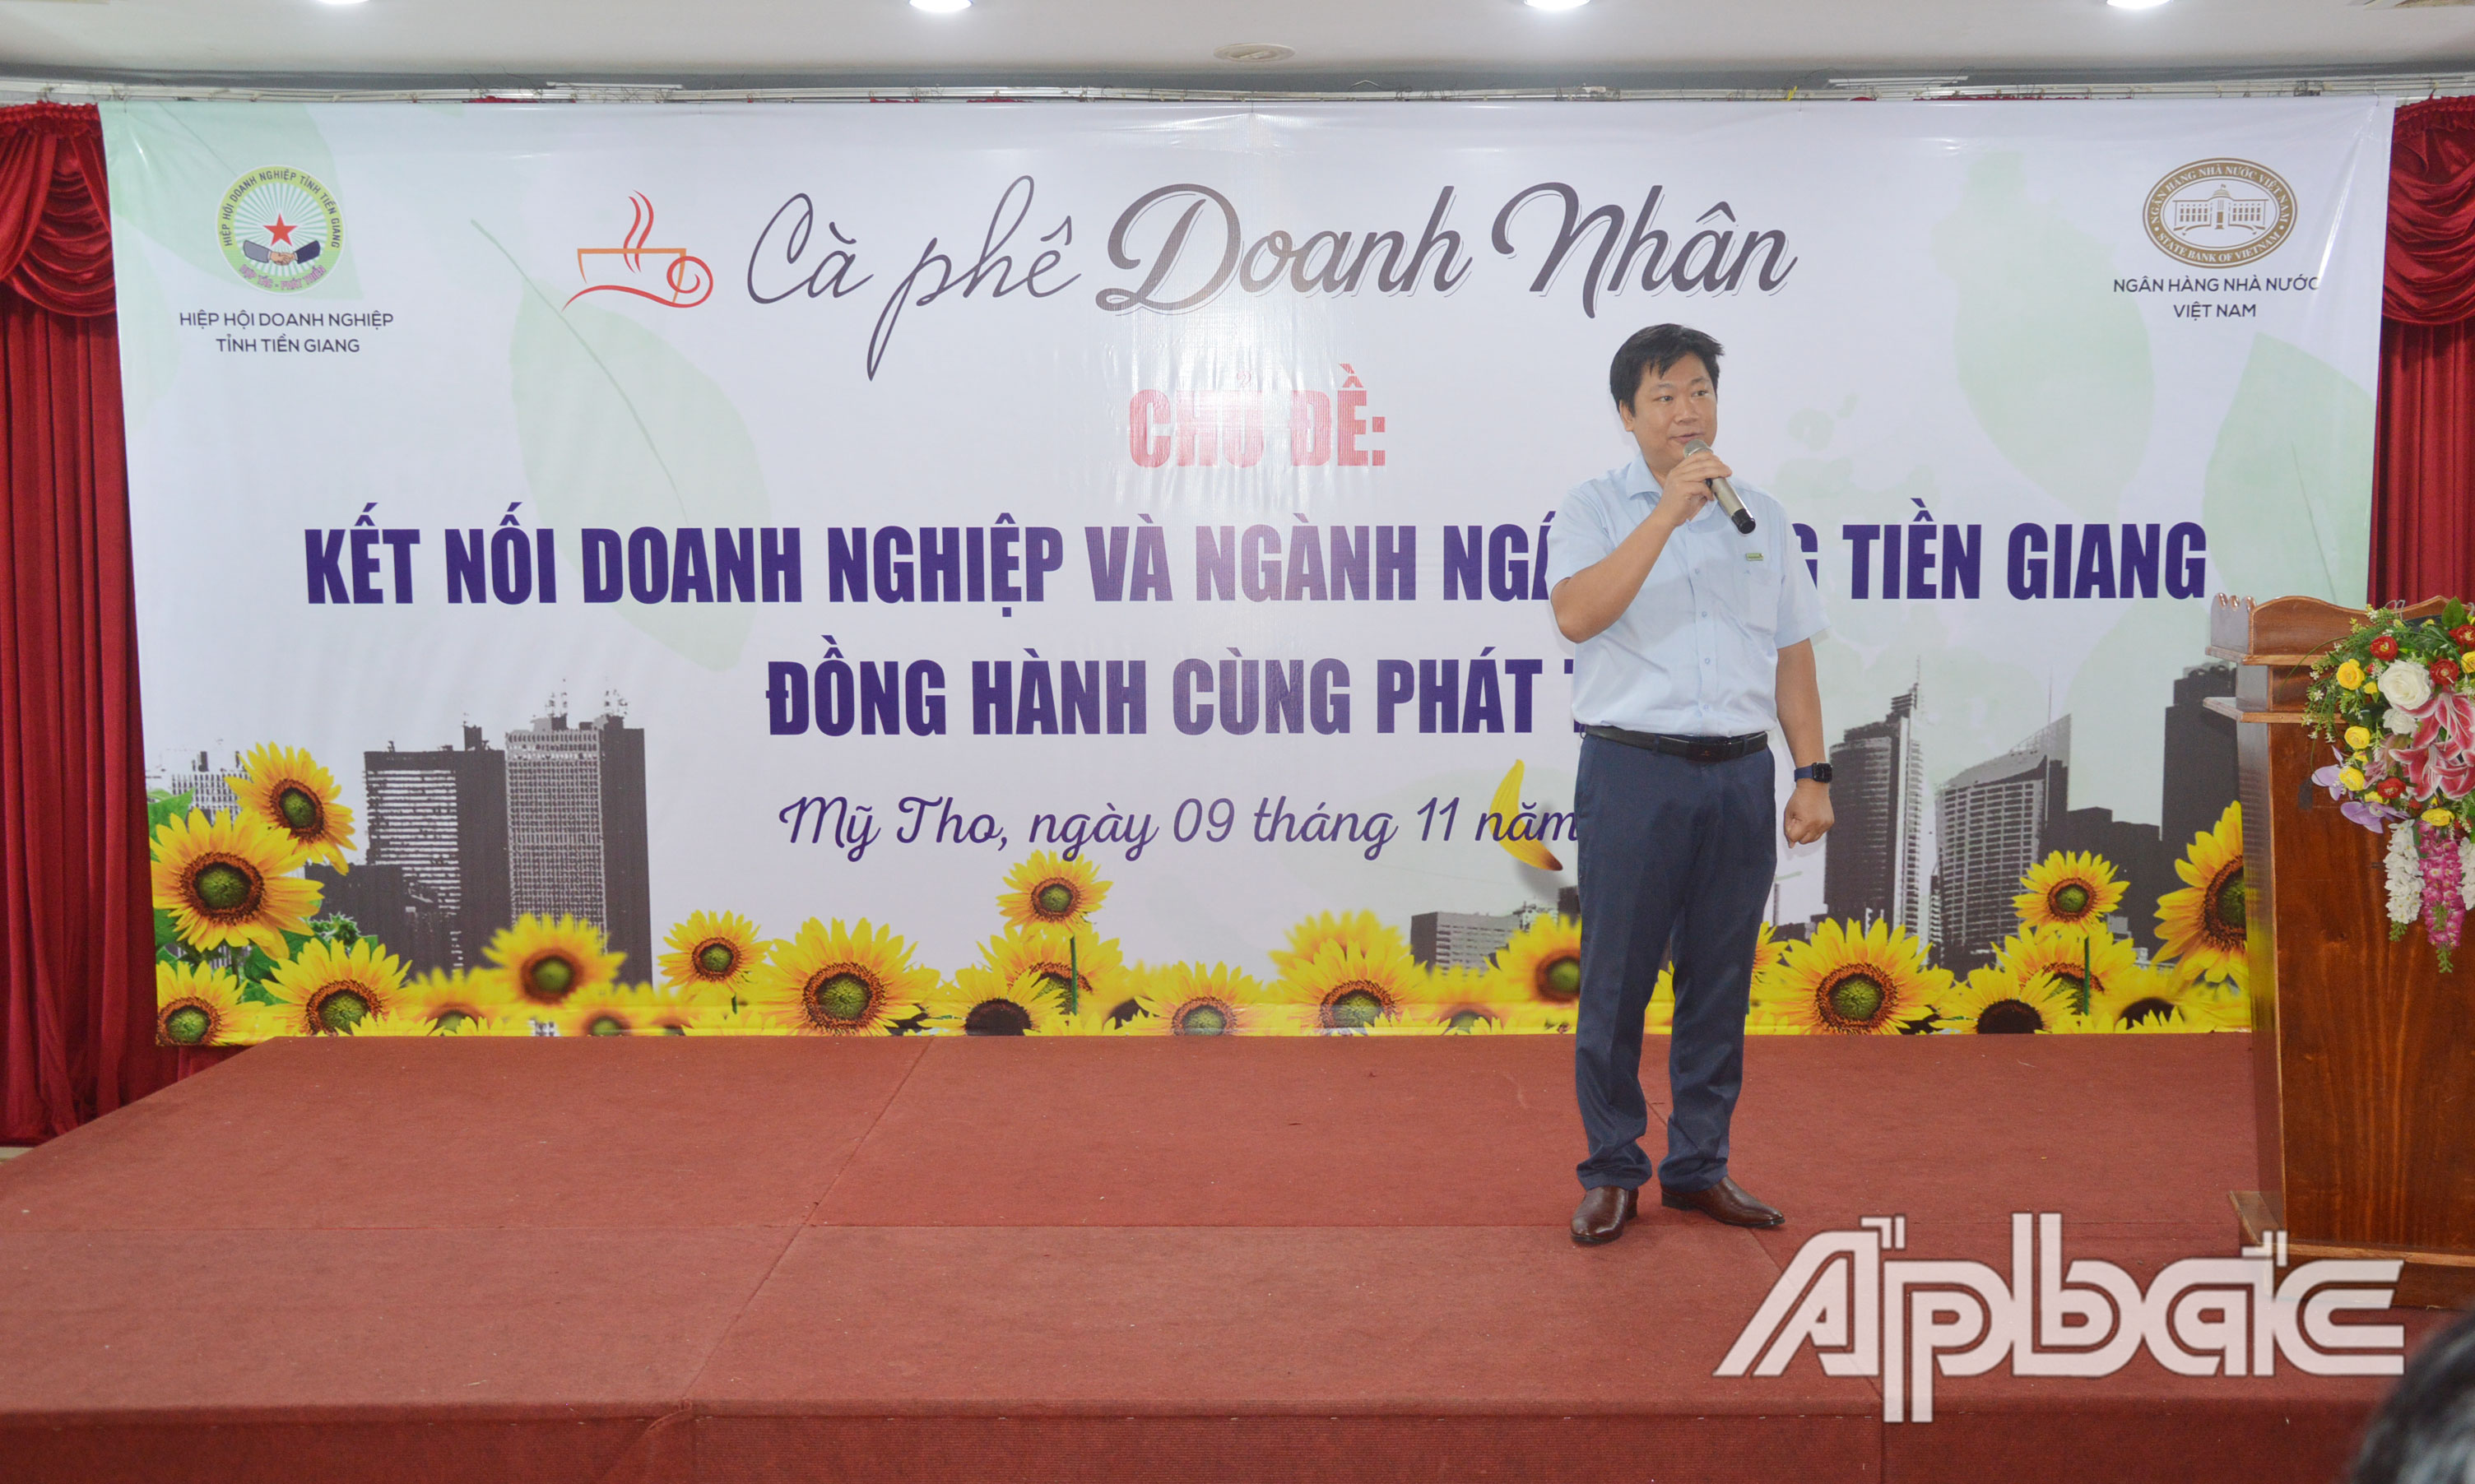 Lãnh đạo Ngân hàng Viettinbank Tiền Giang phát biểu tại buổi Cà phê doanh nhân.